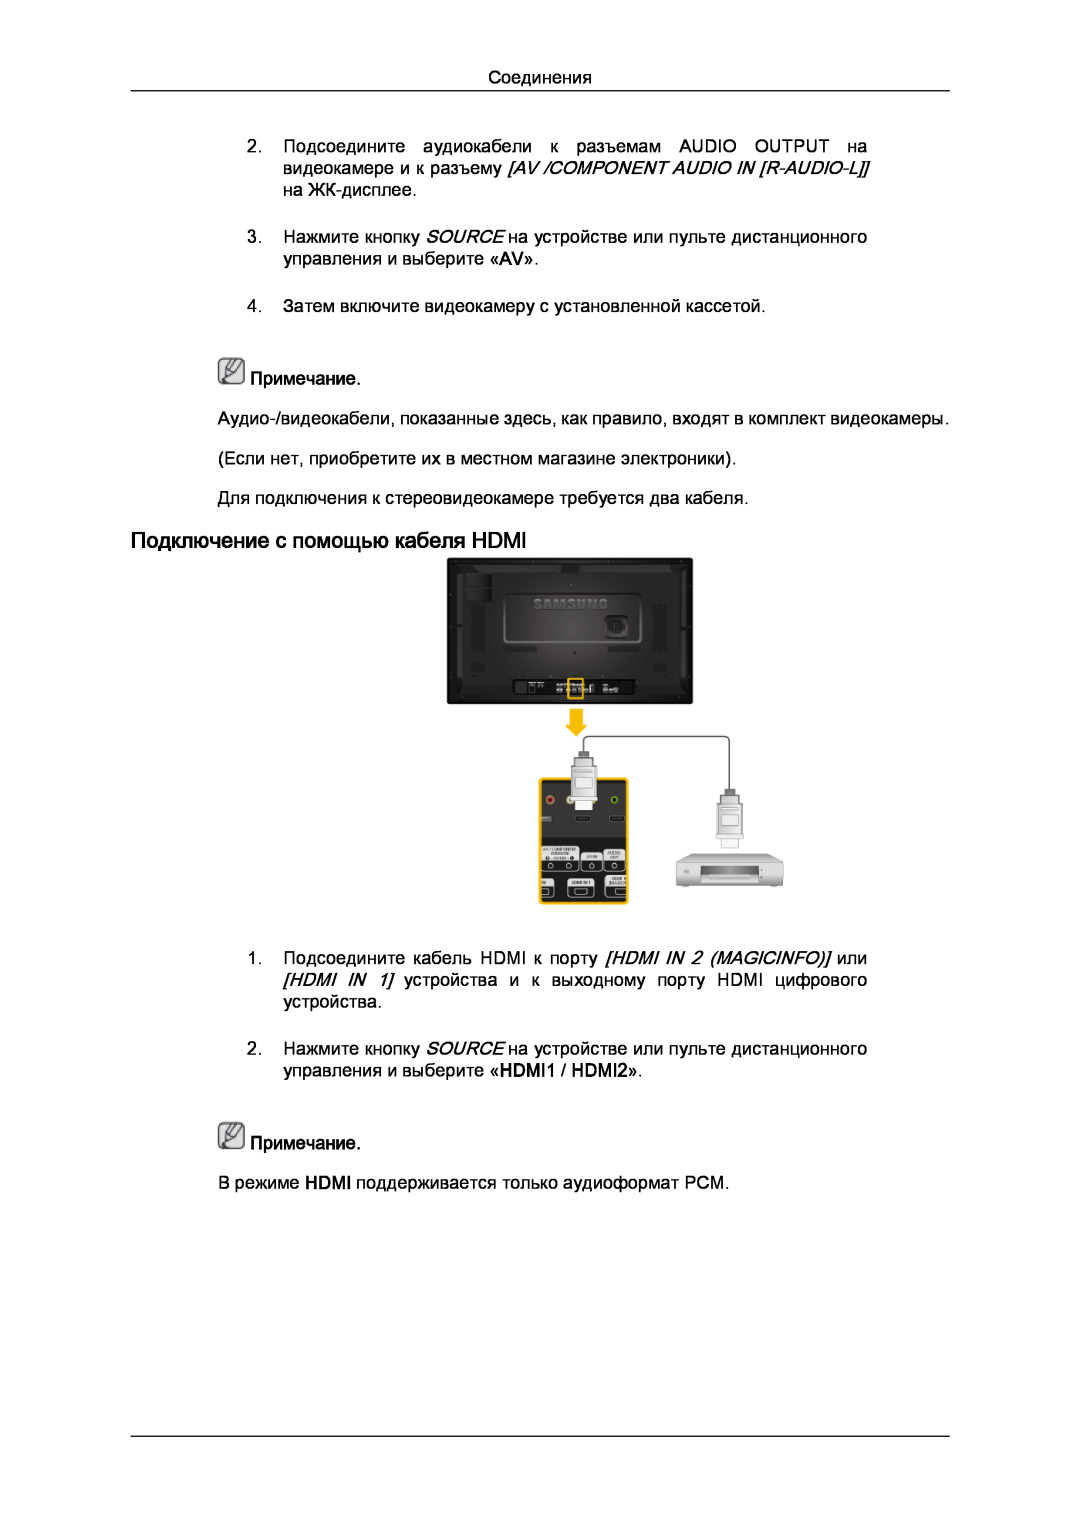 Samsung LH32CRTMBC/EN, LH32CRSMBD/EN manual Подключение с помощью кабеля HDMI, Примечание 